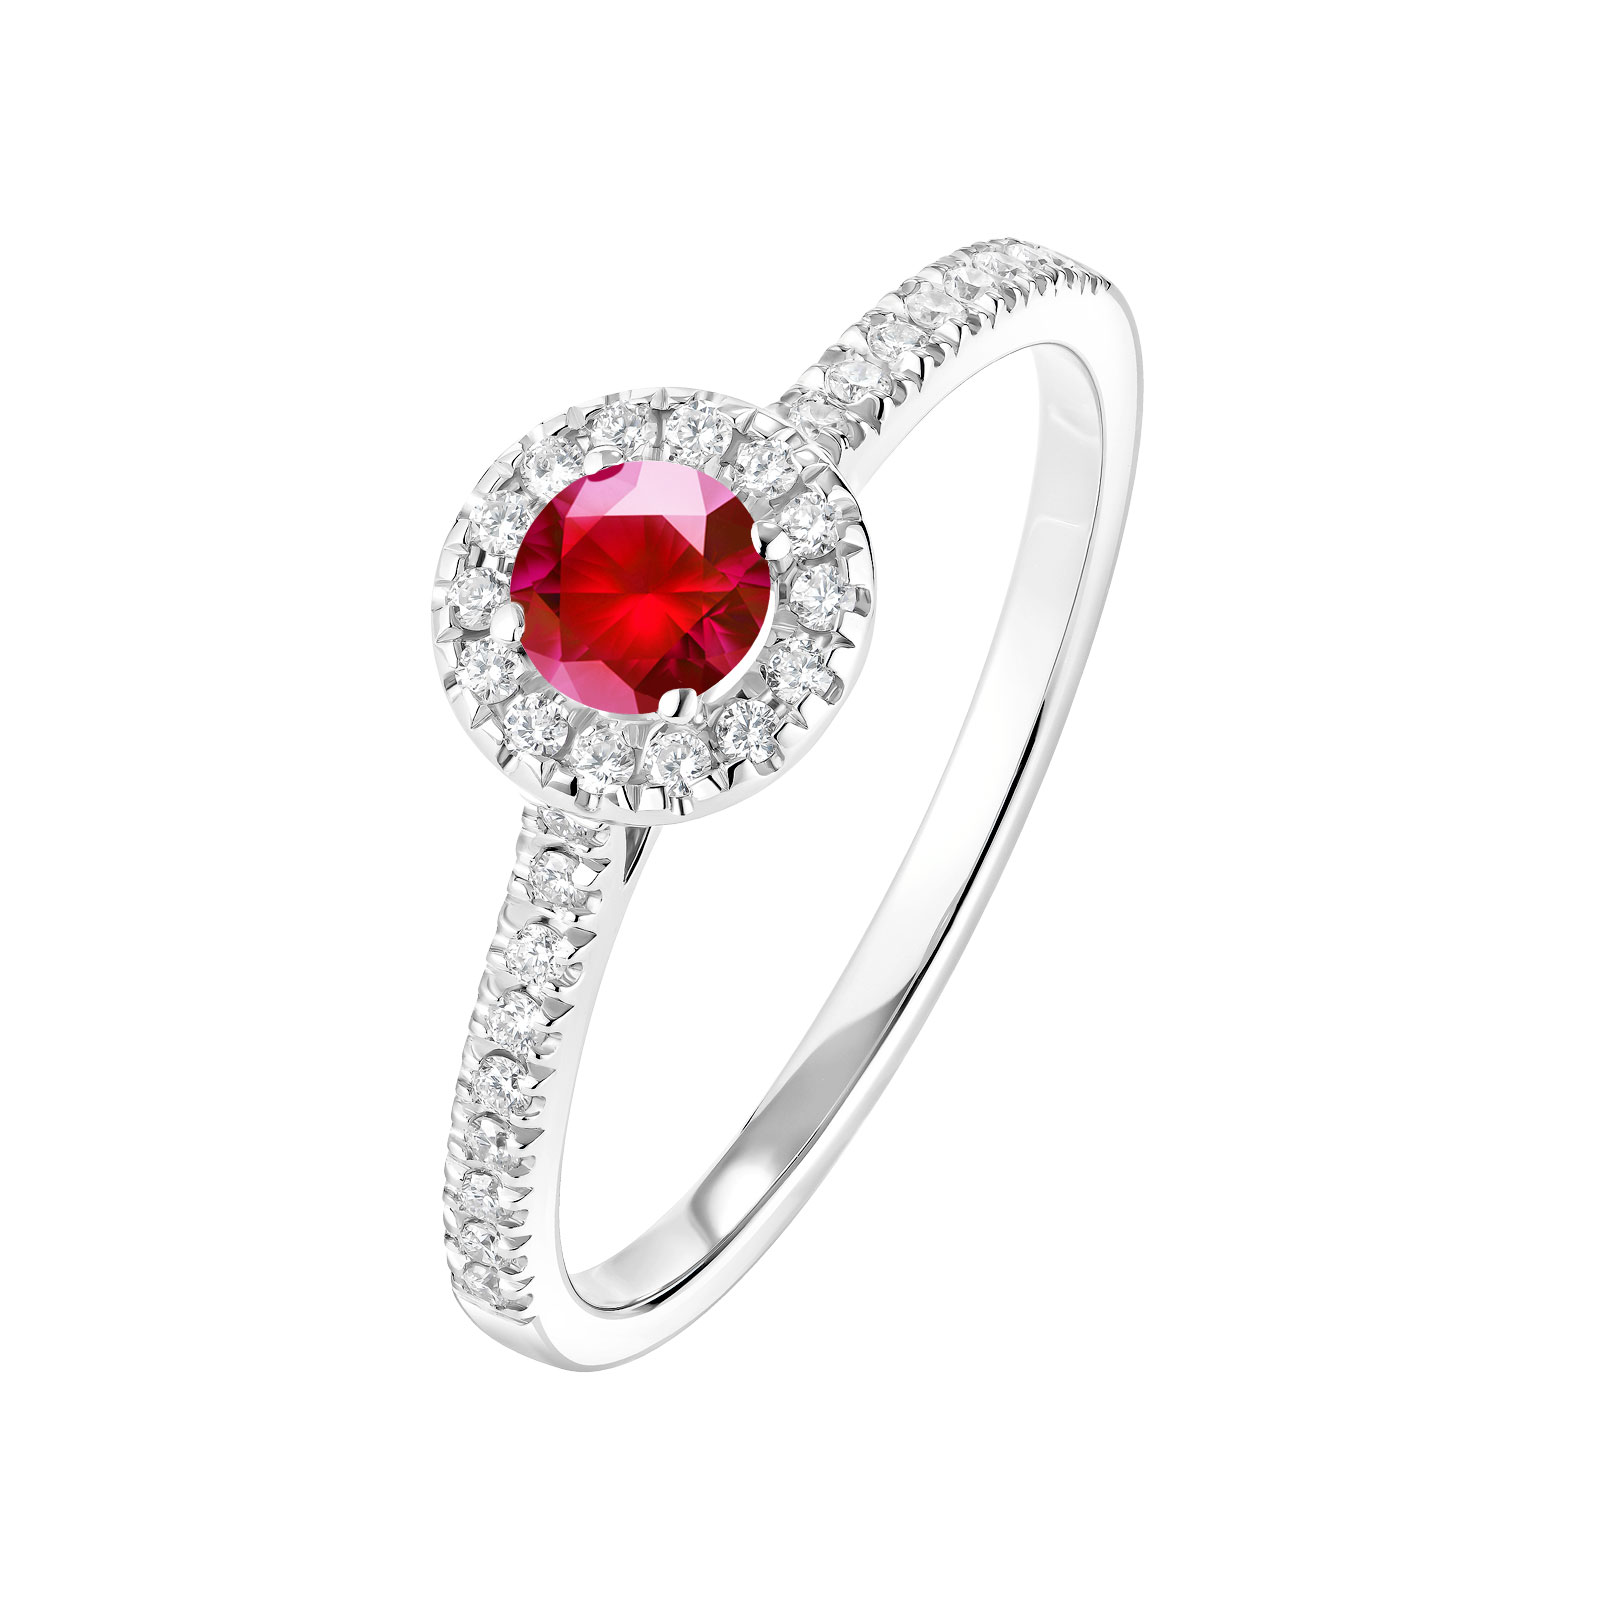 Ring White gold Ruby and diamonds Rétromantique S Pavée 1